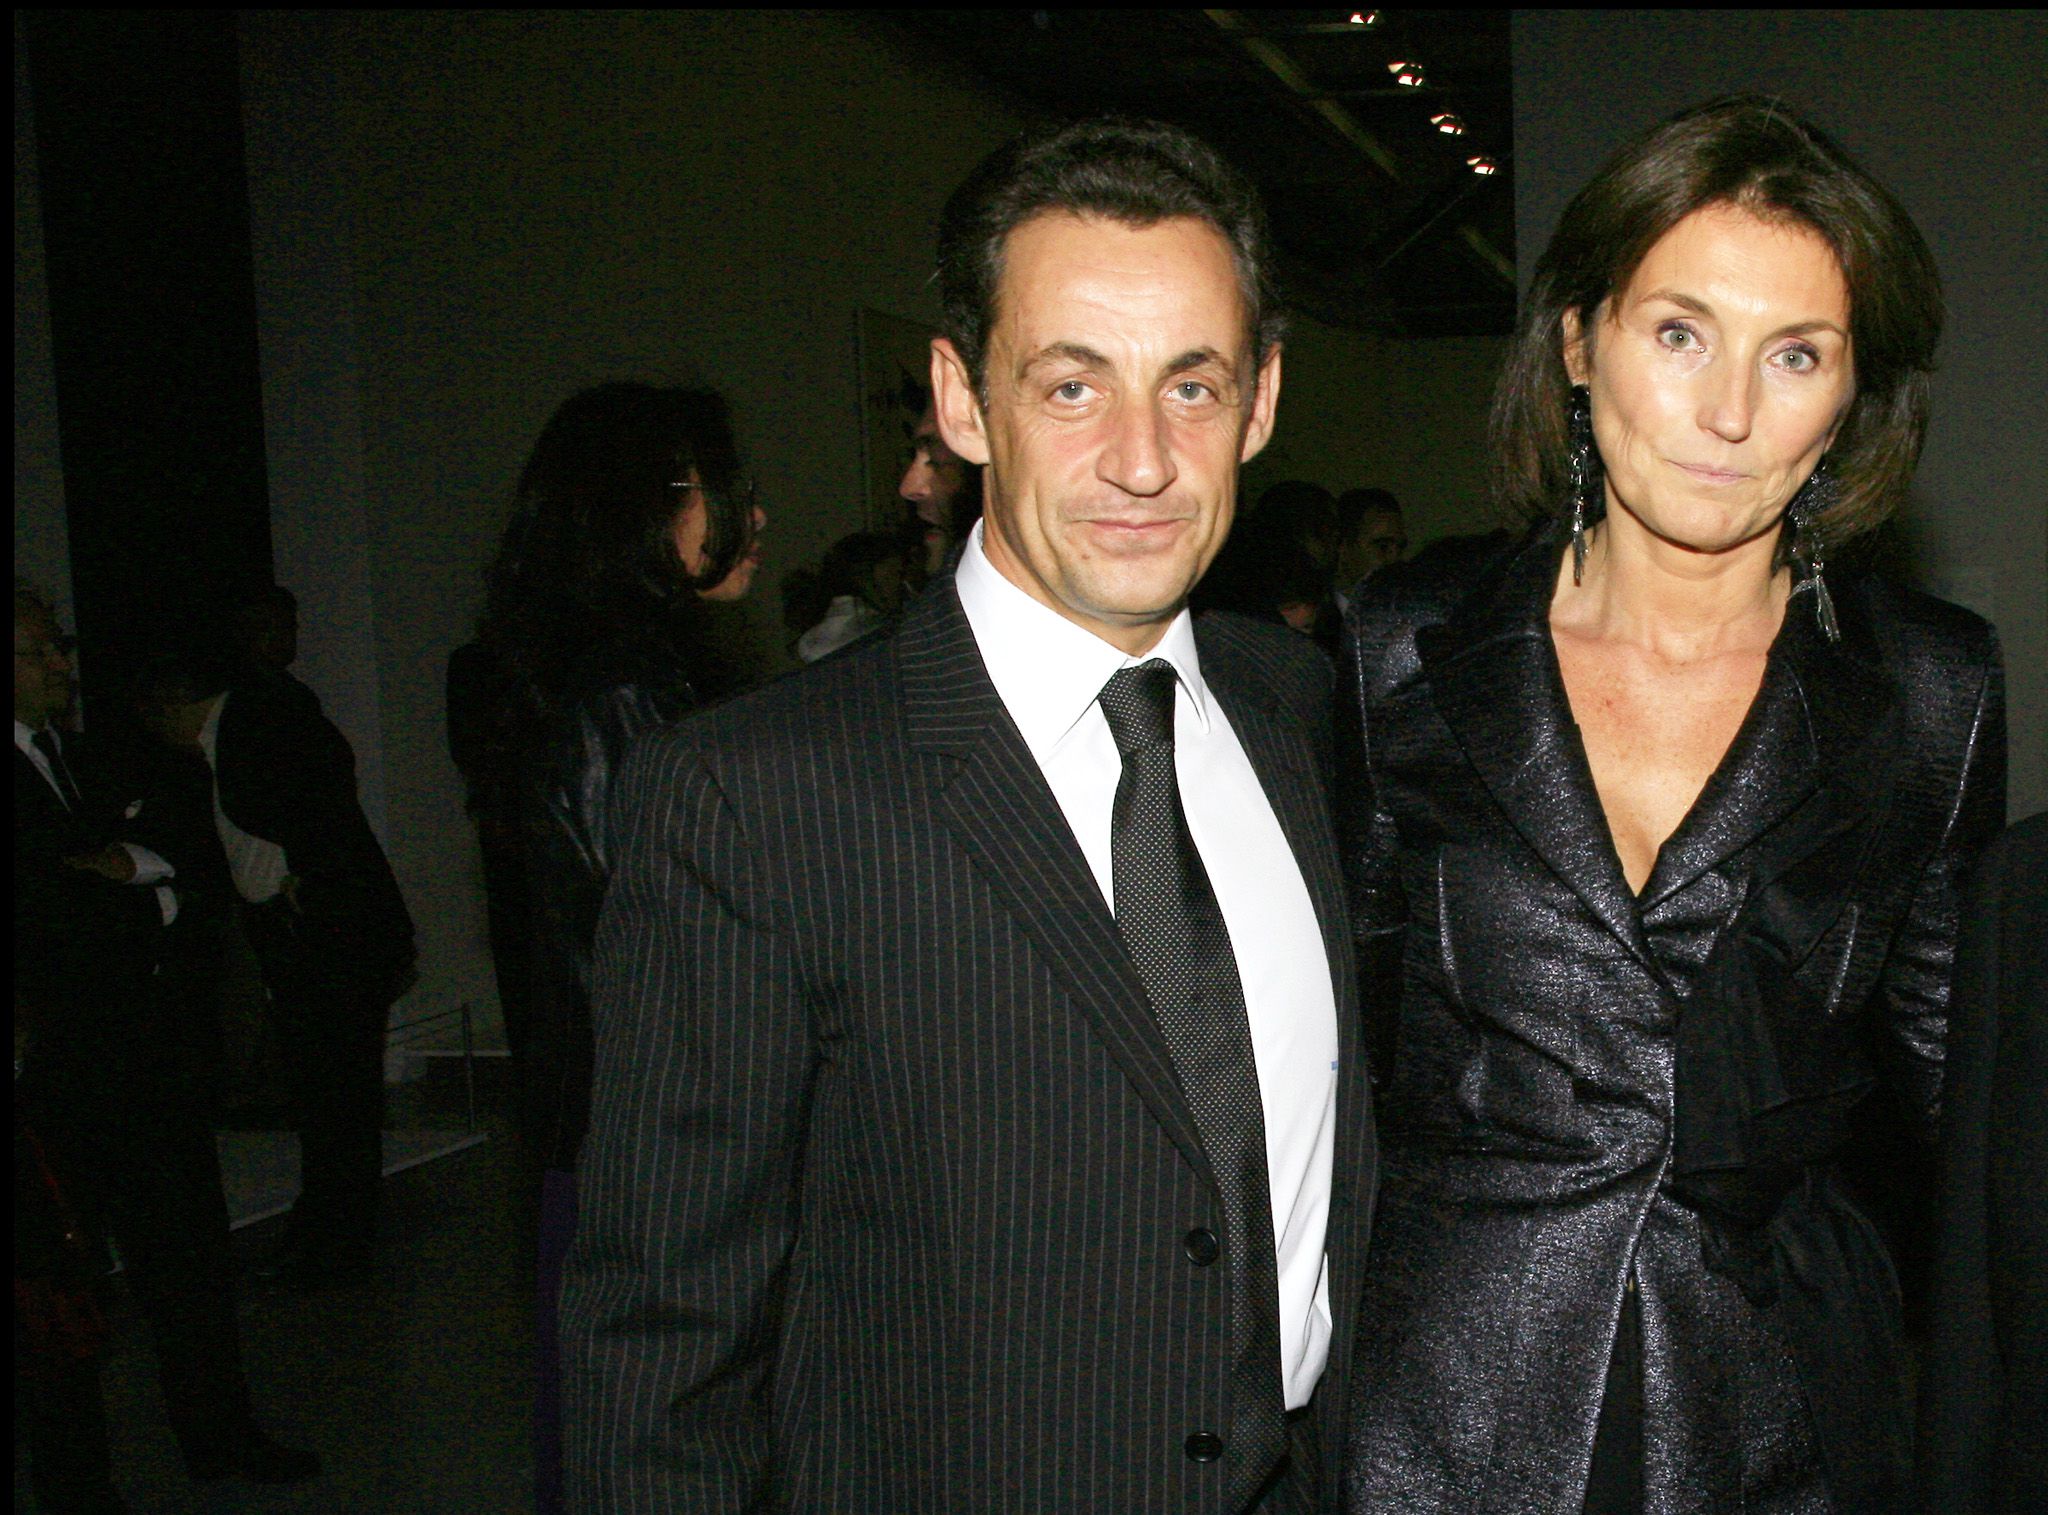 Nicolas Sarkozy évoque son divorce avec Cécilia Attias : &quot;Je l'avais craint, j'avais tort&quot;